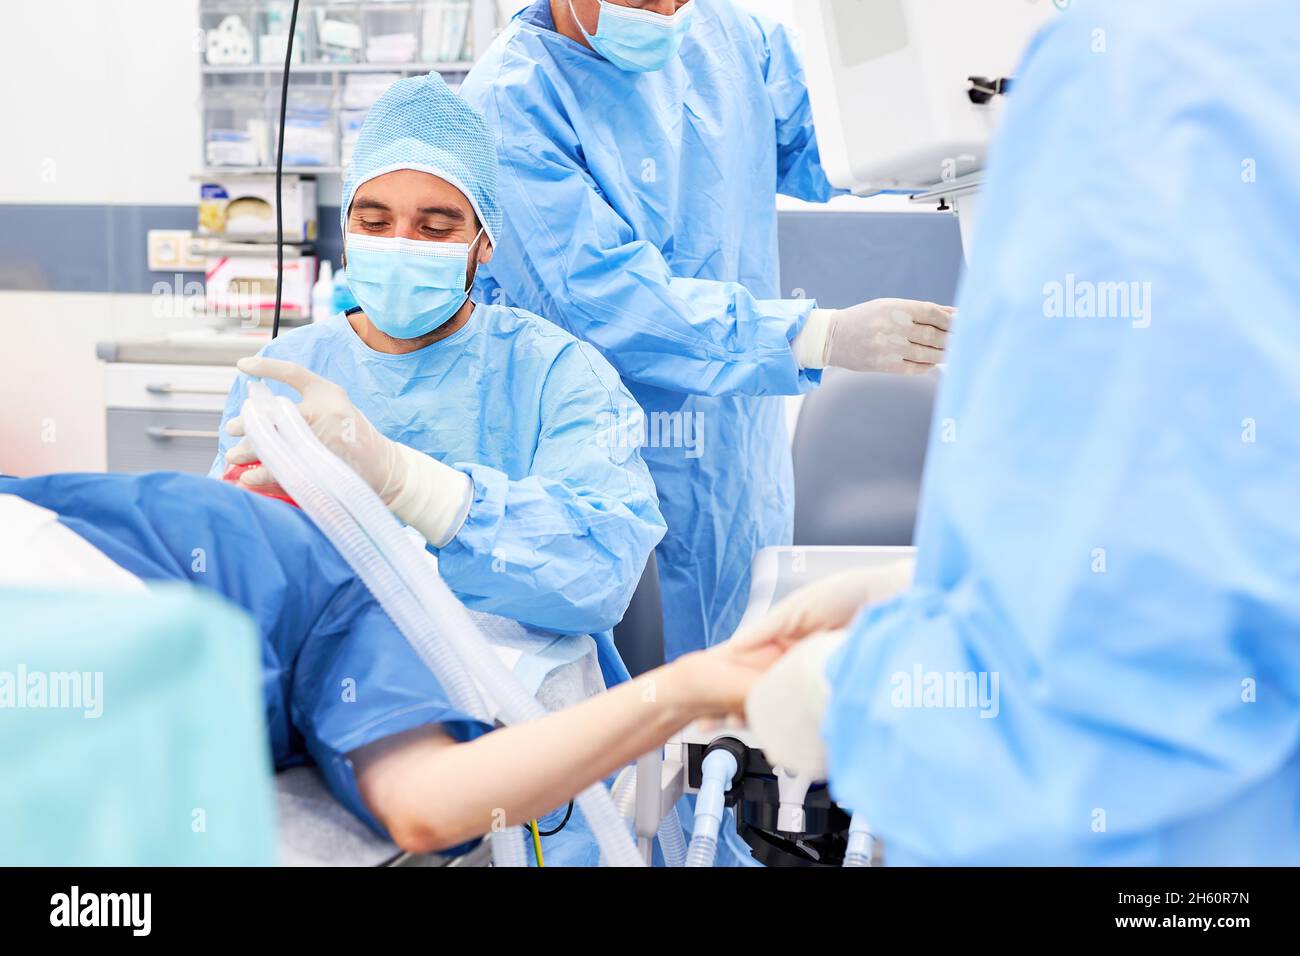 Anästhesist und Operationsteam geben der Patientin vor dem Operationssaal bei einer Notfalloperation Anästhesie Stockfoto